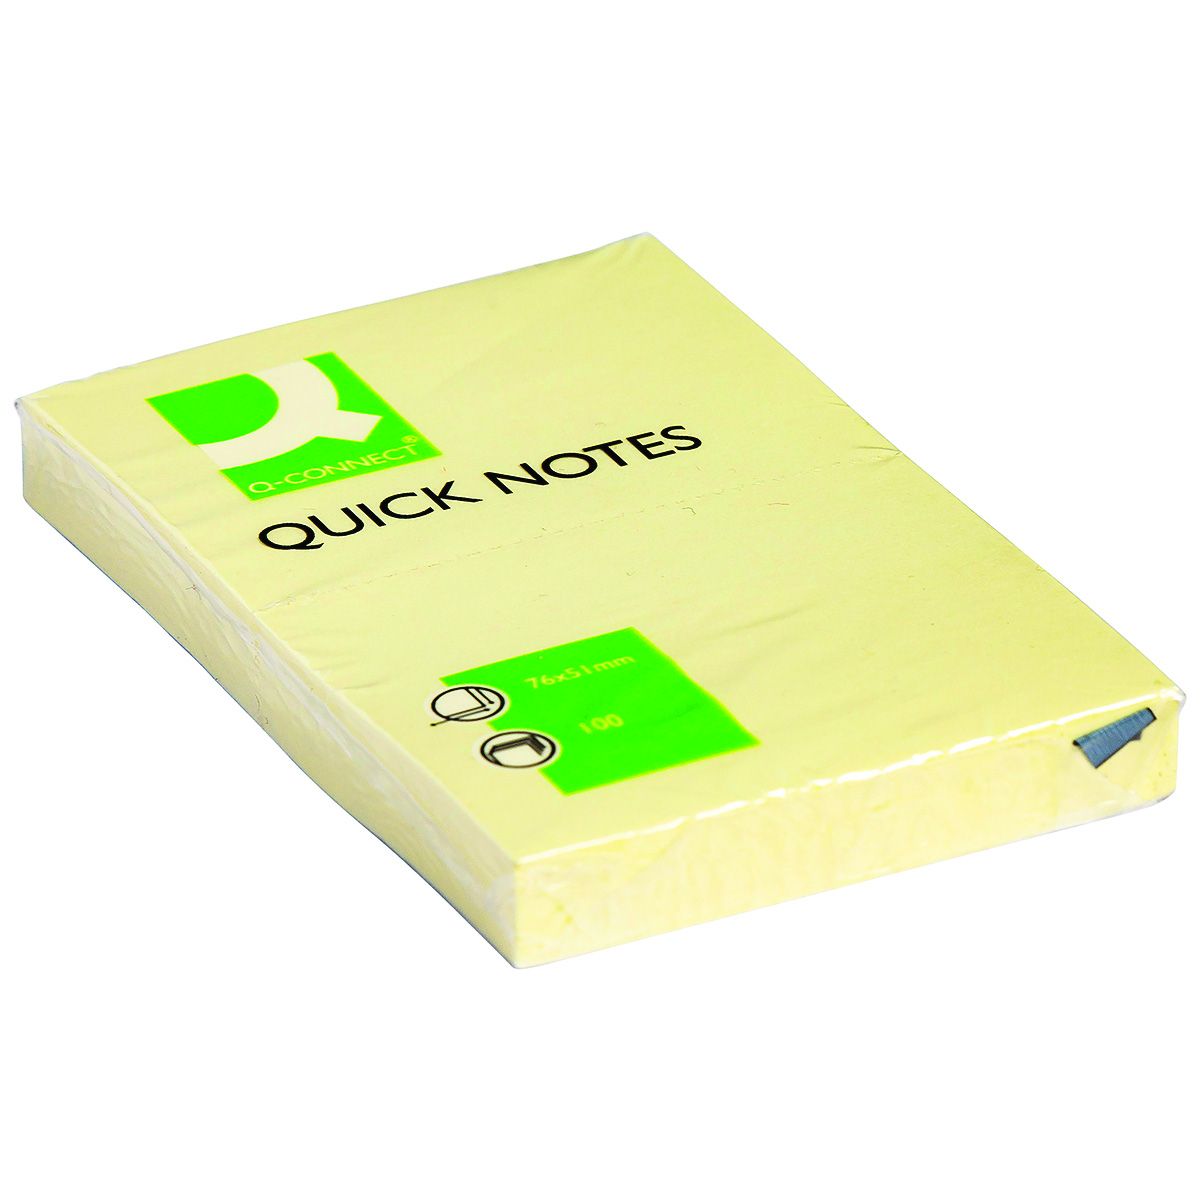 Notes samoprzylepny Q-Connect żółty 100k [mm:] 51x76 (KF10501)